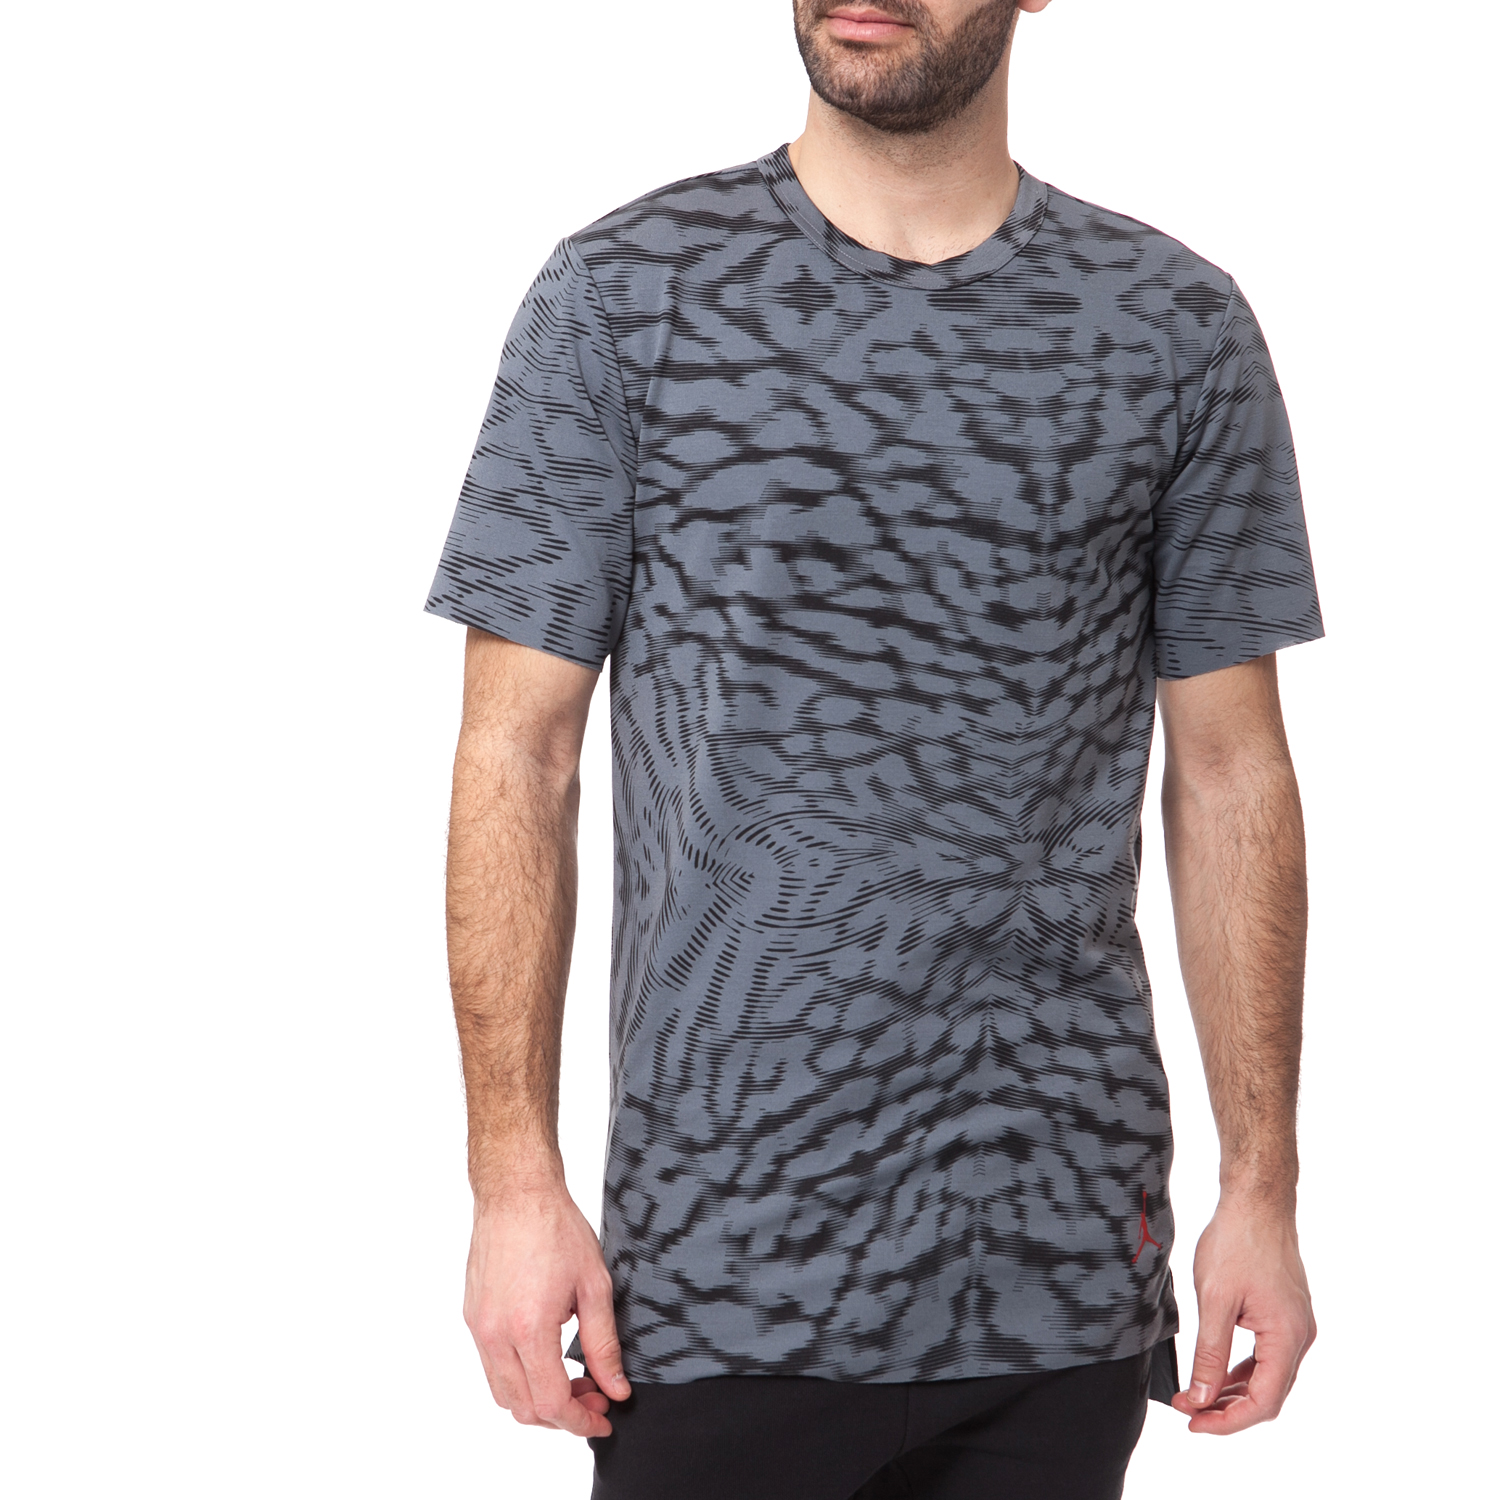 Ανδρικά/Ρούχα/Αθλητικά/T-shirt NIKE - Ανδρική μπλούζα Nike μαύρη-γκρι